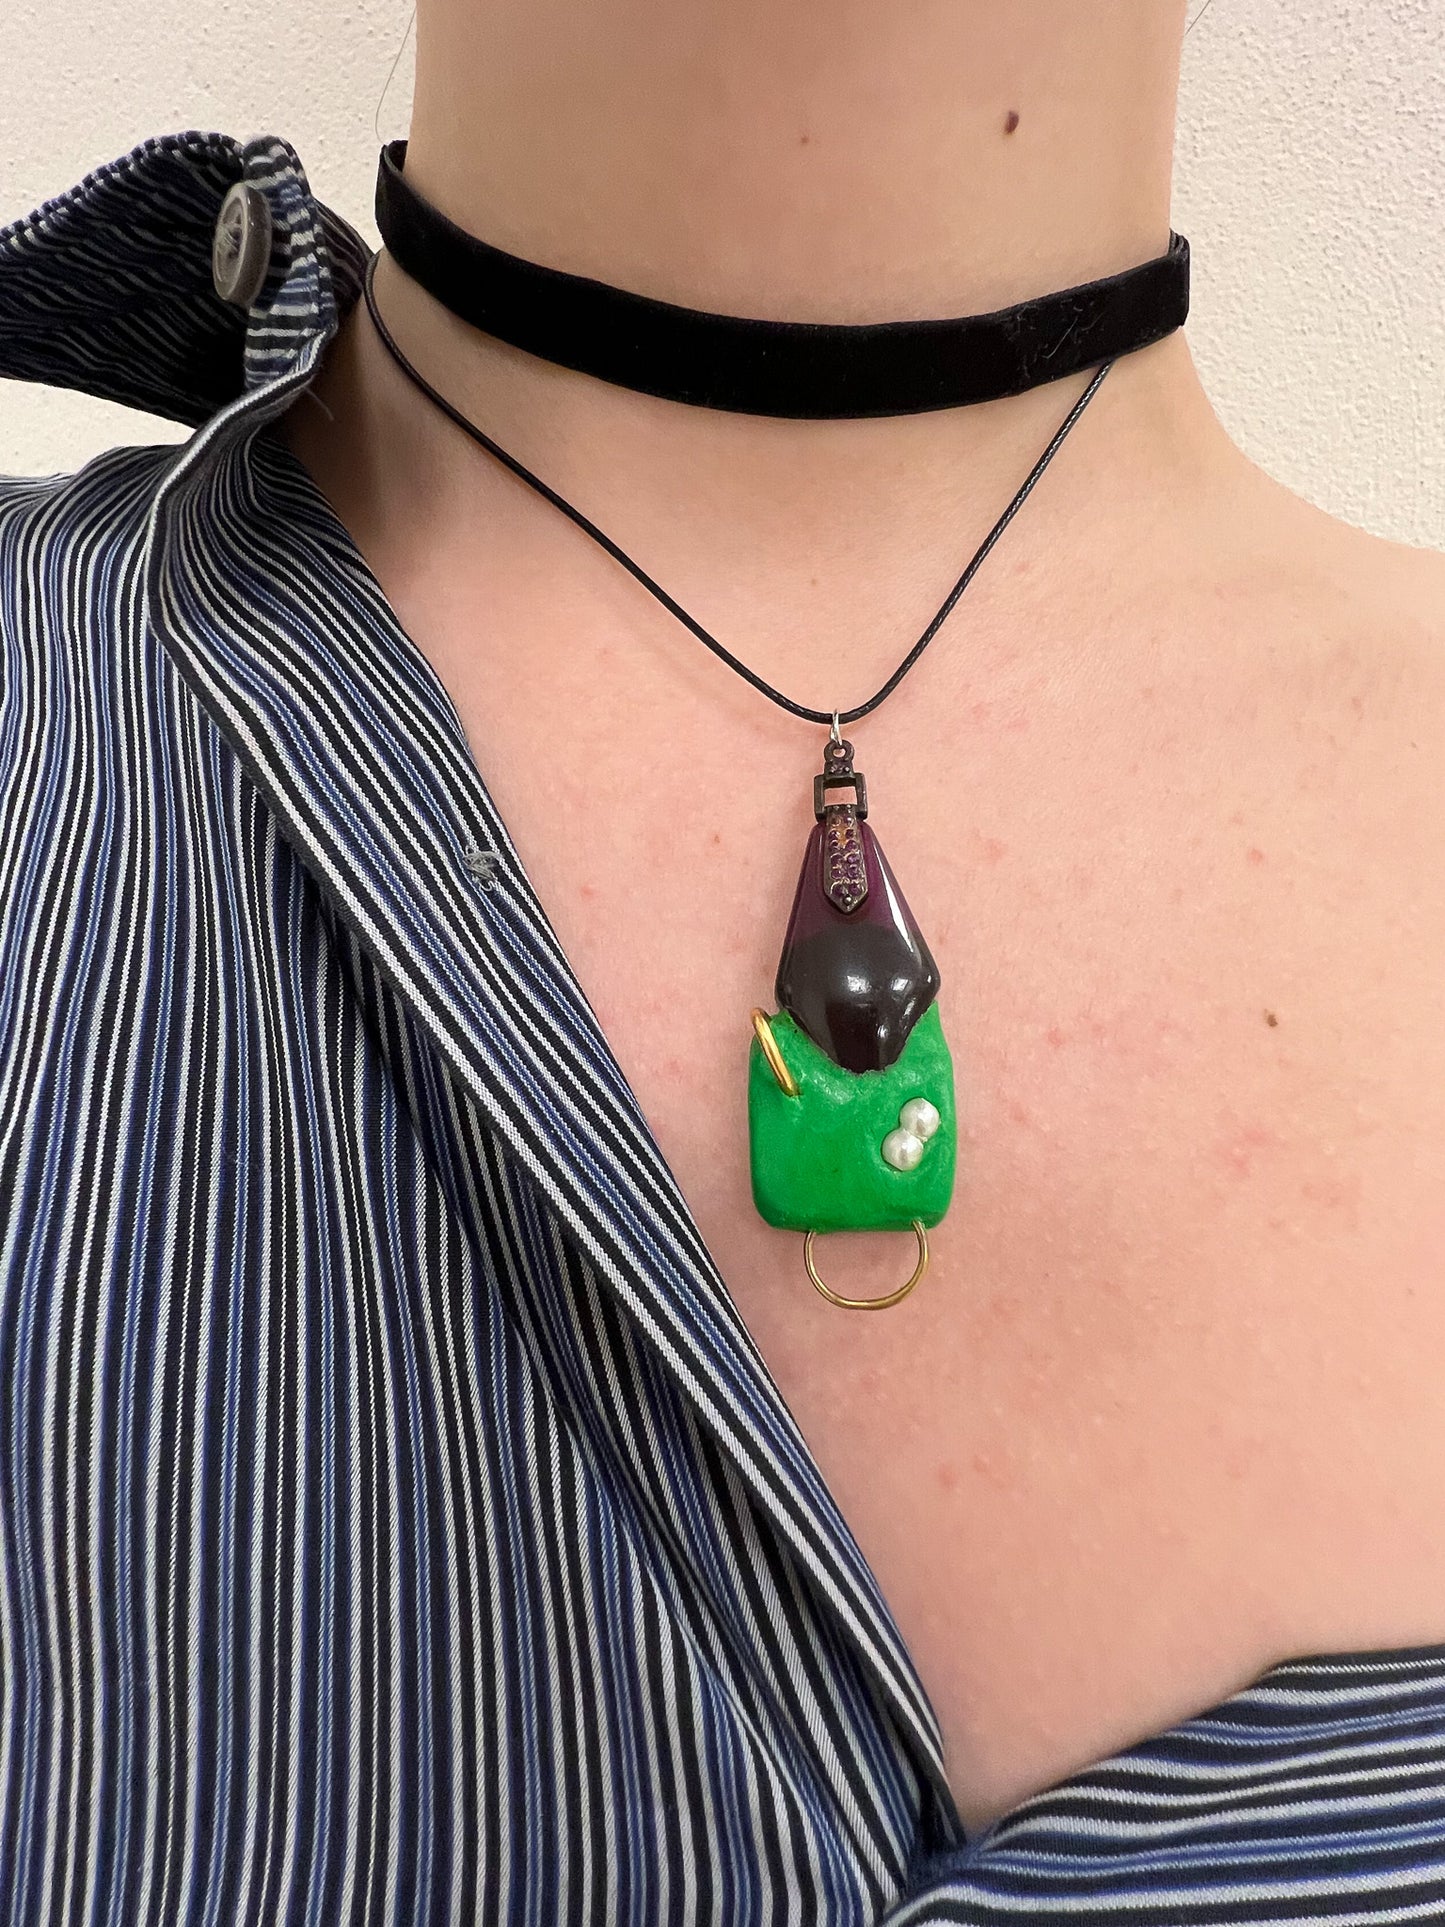 TATI necklace green tear drop